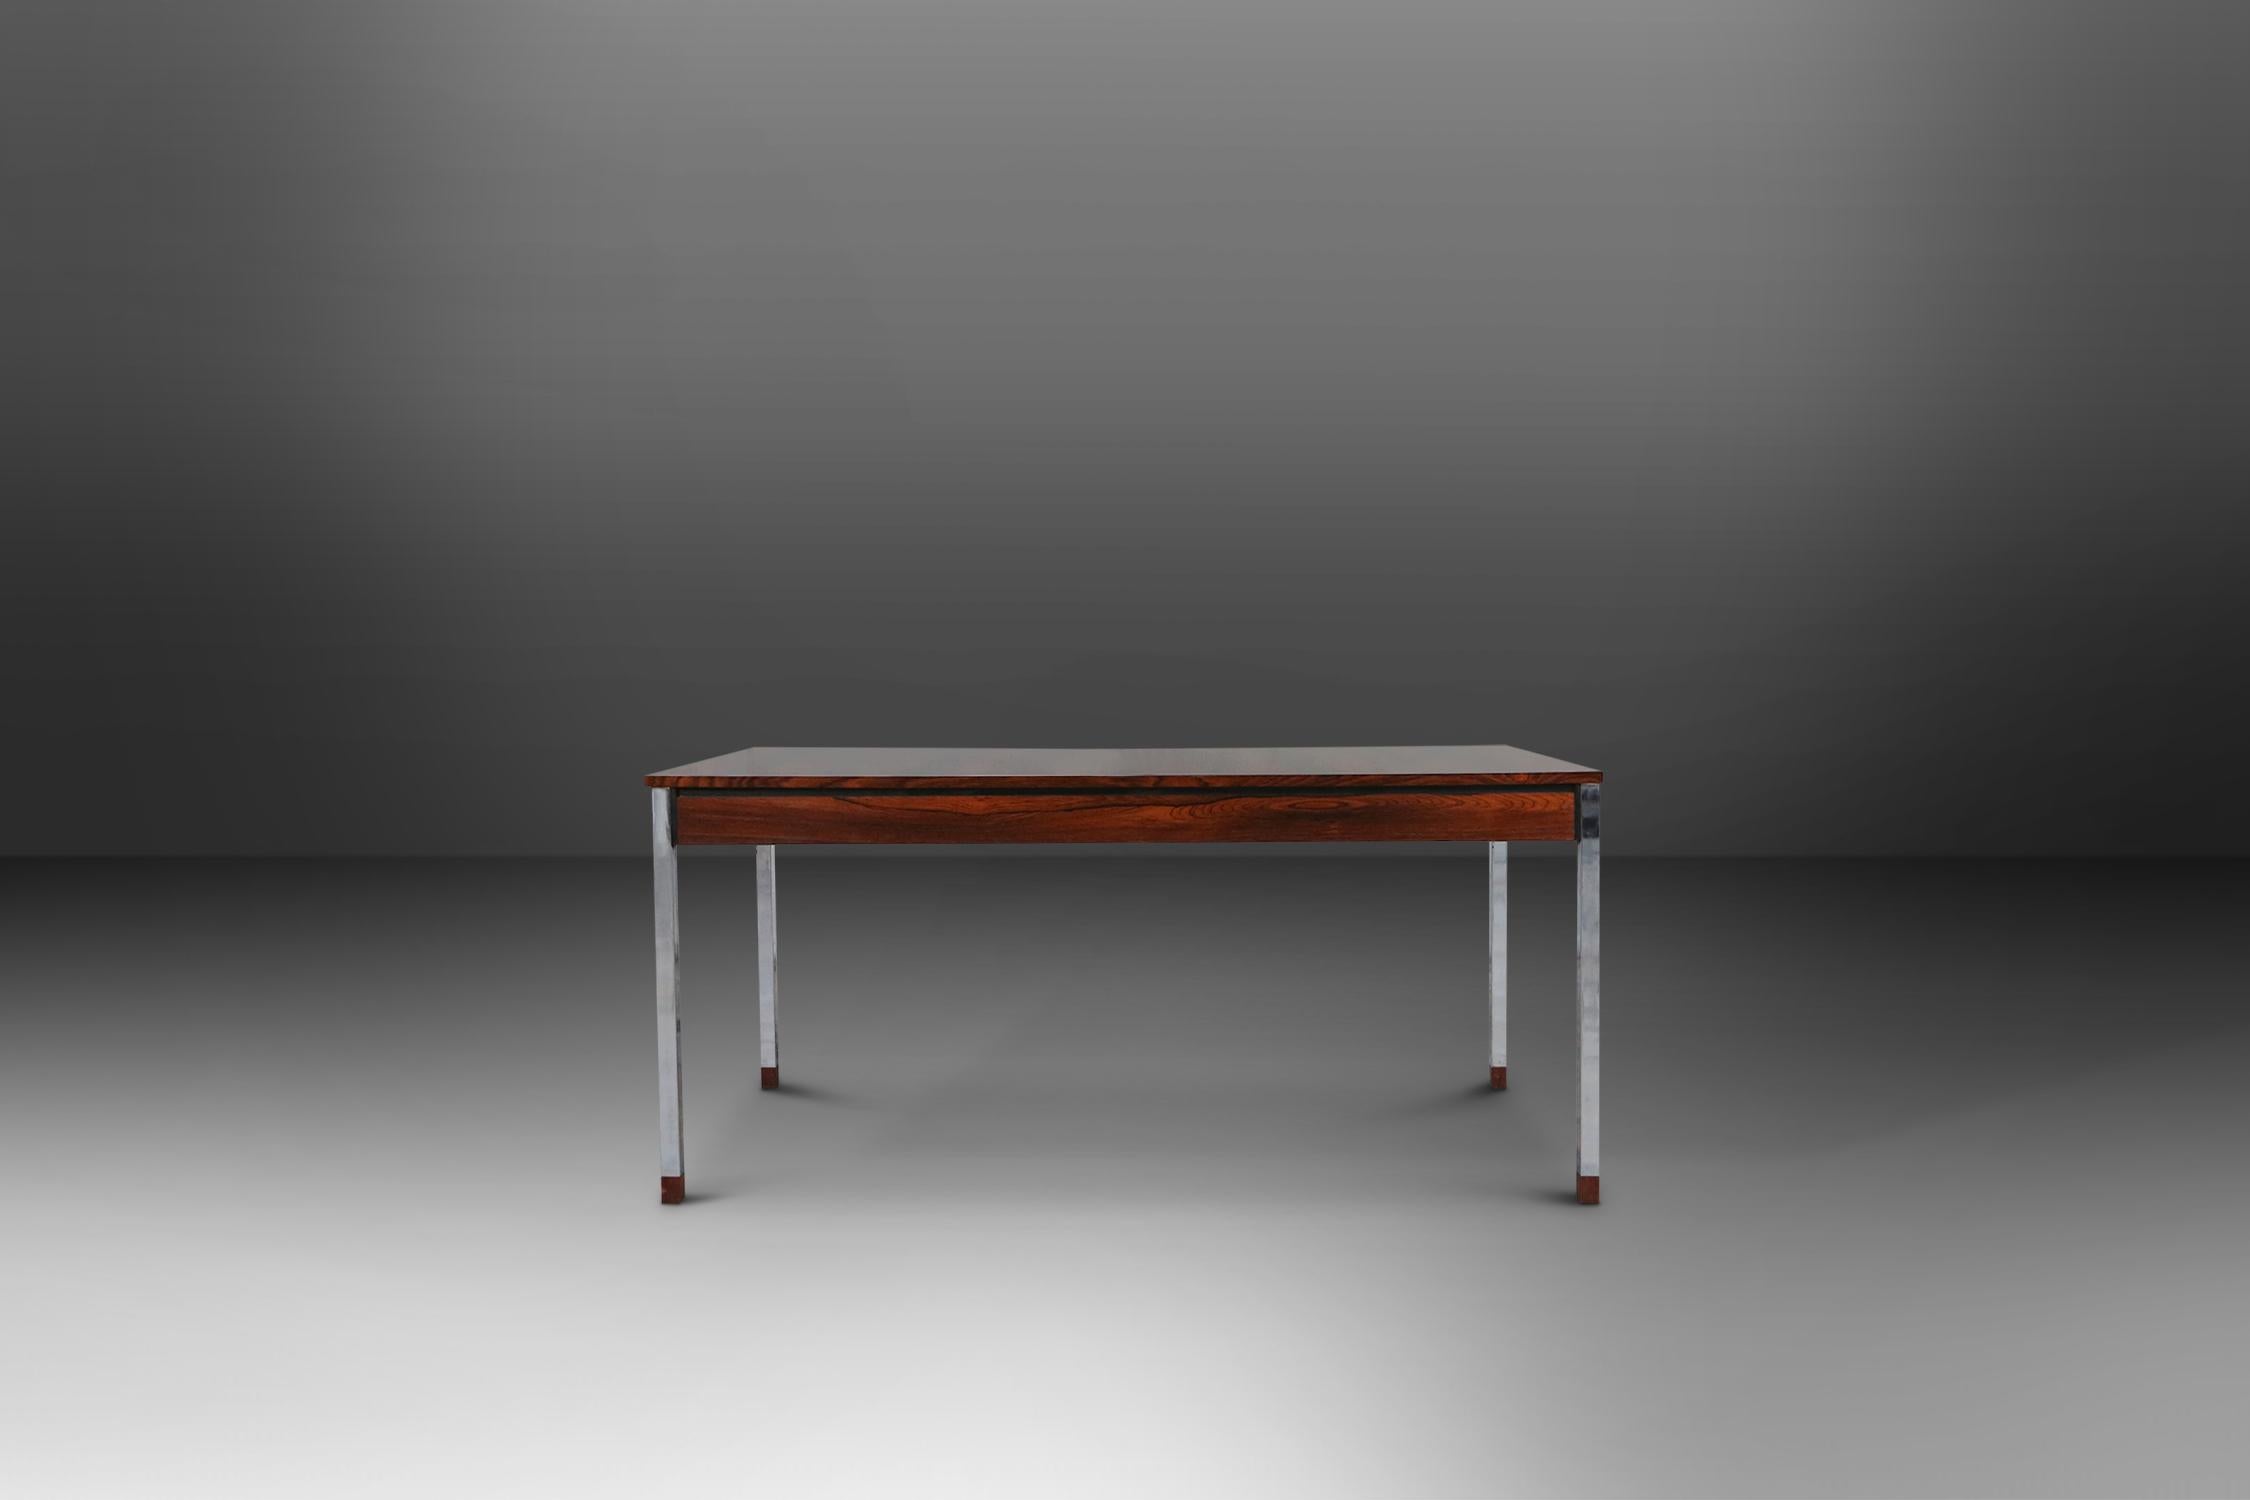 Table de salle à manger conçue par Alfred Hendrickx pour Belfrom.
Il a un dessus en bois de rose et une base en chrome avec des cubes en bois de rose à l'extrémité.